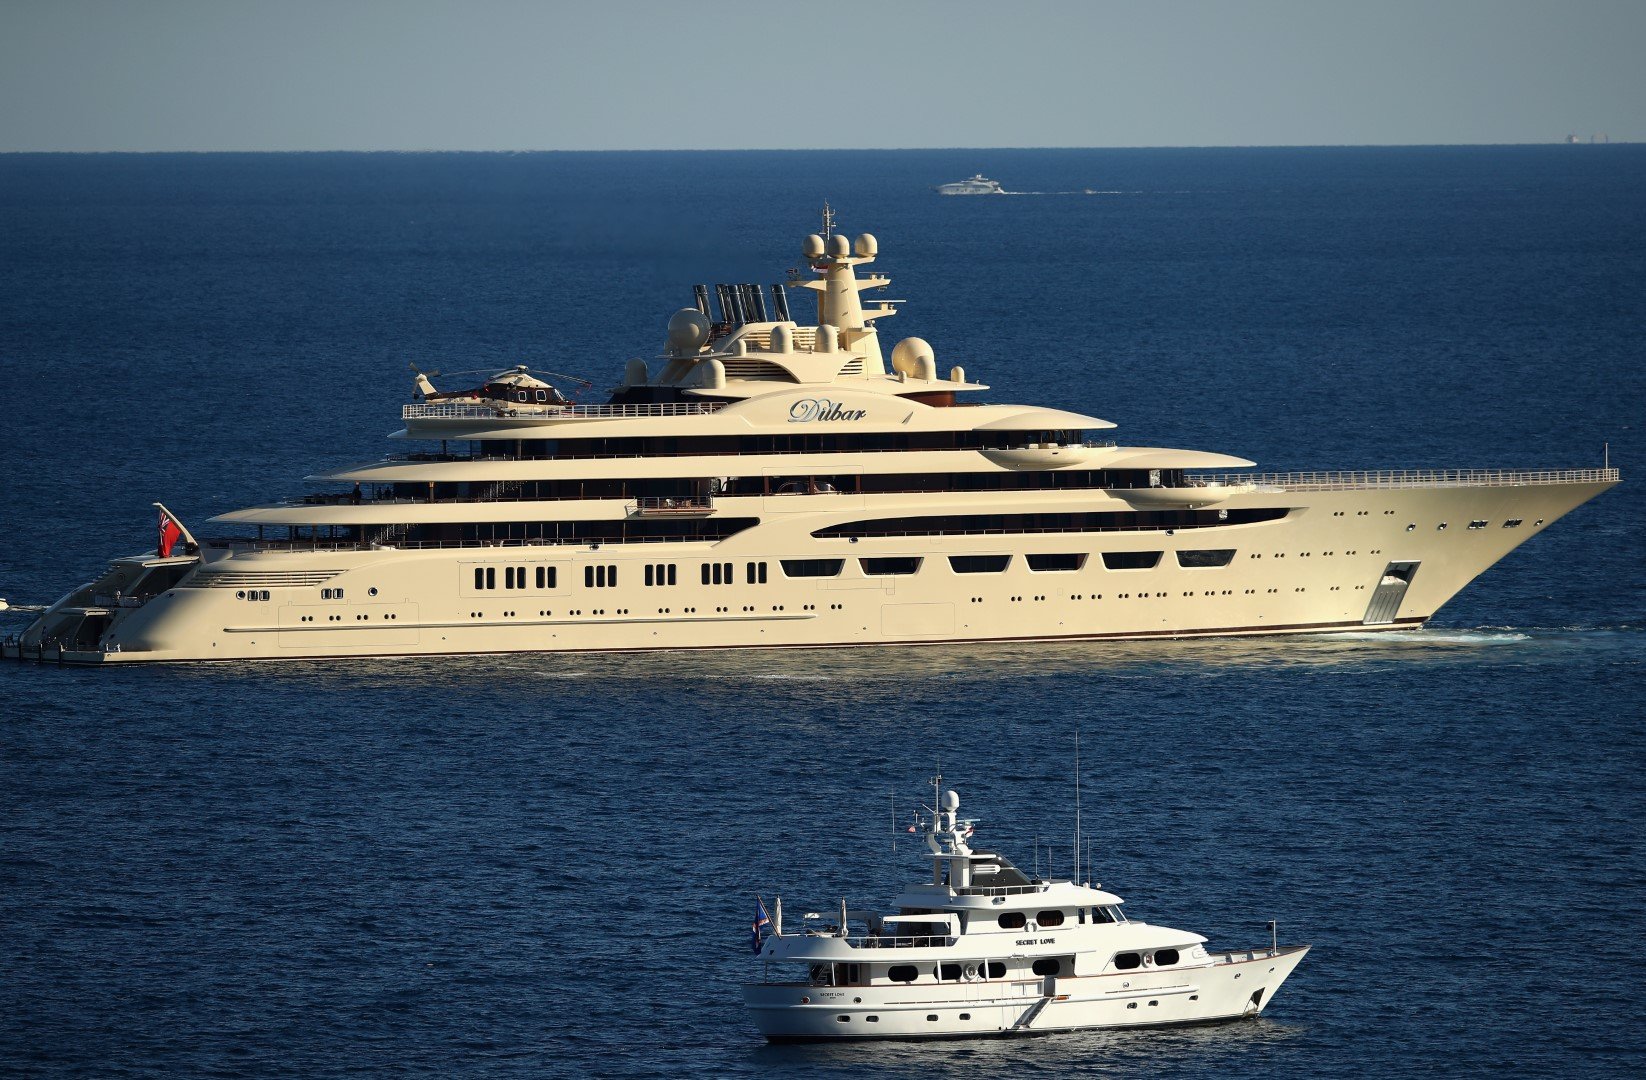 Най-голямата яхта в света - The Dilbar, на Алишер Усманов, плава от Monte Carlo Country Club в петия ден от Monte Carlo Rolex Masters в Спортния клуб в Монте Карло, Монако, на 20 април 2017 г.